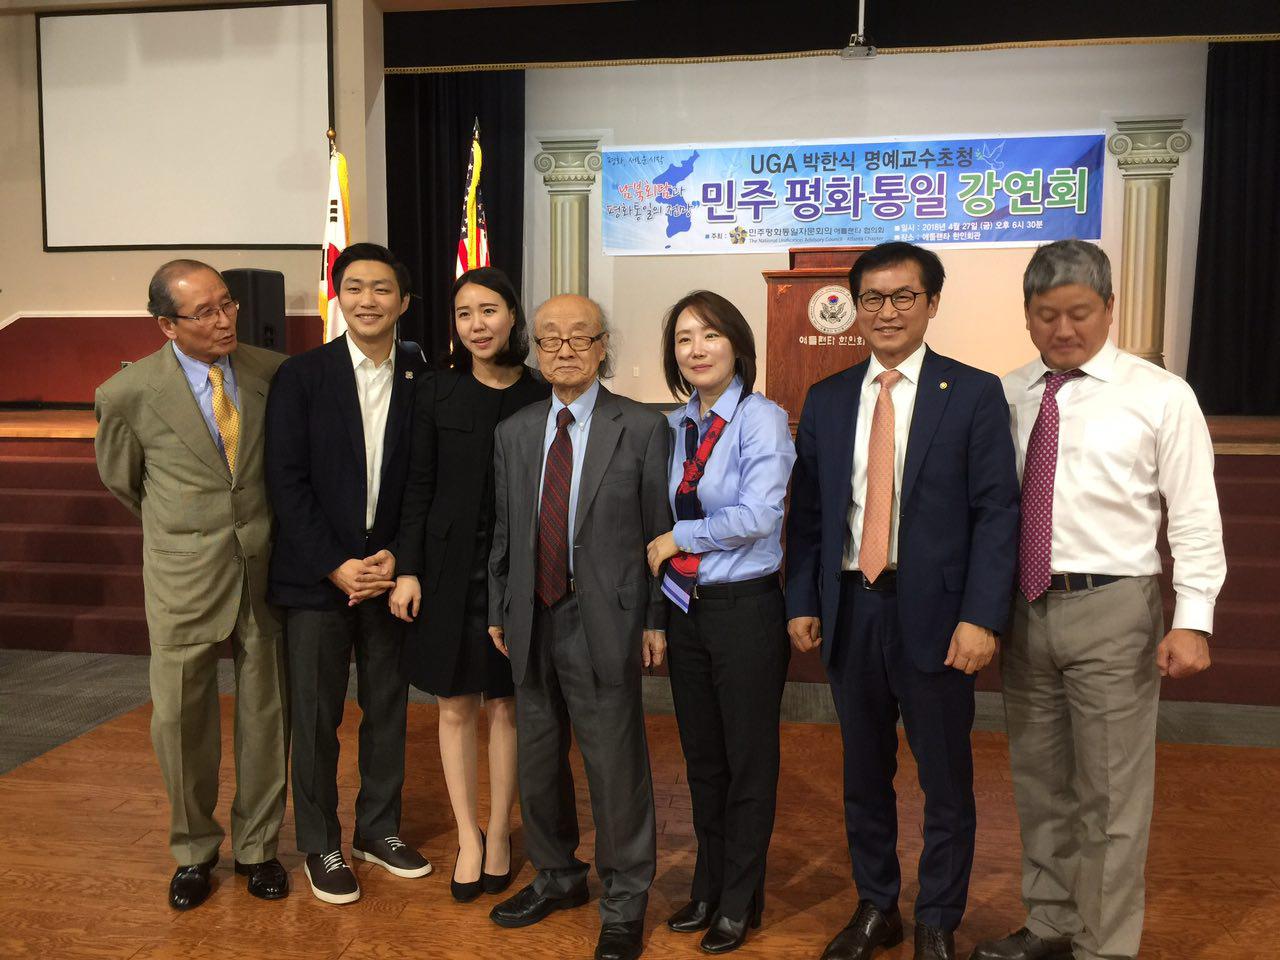 김종대 대표 (왼쪽 두번째), 박한식 교수 (가운데), 김형률 회장(오른쪽 두번째)